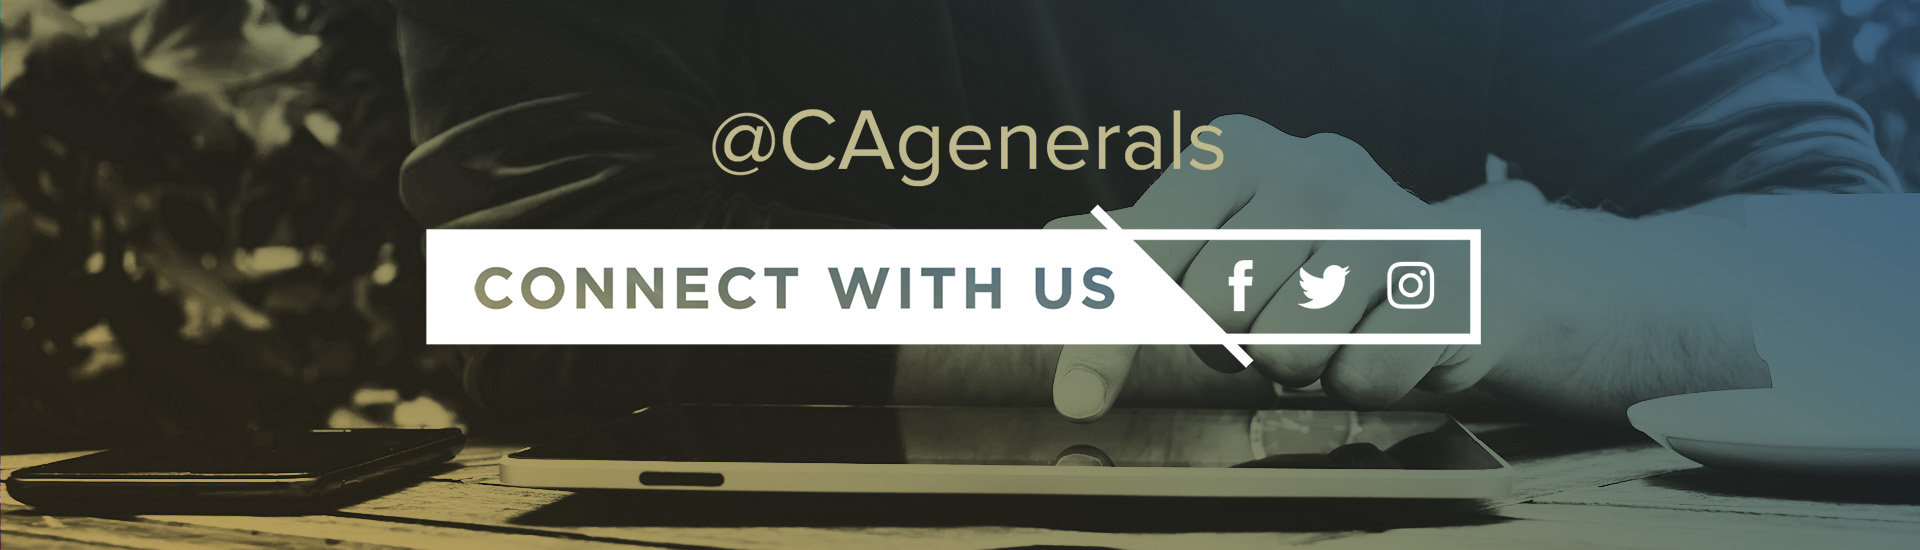 @CAgenerals social media slide